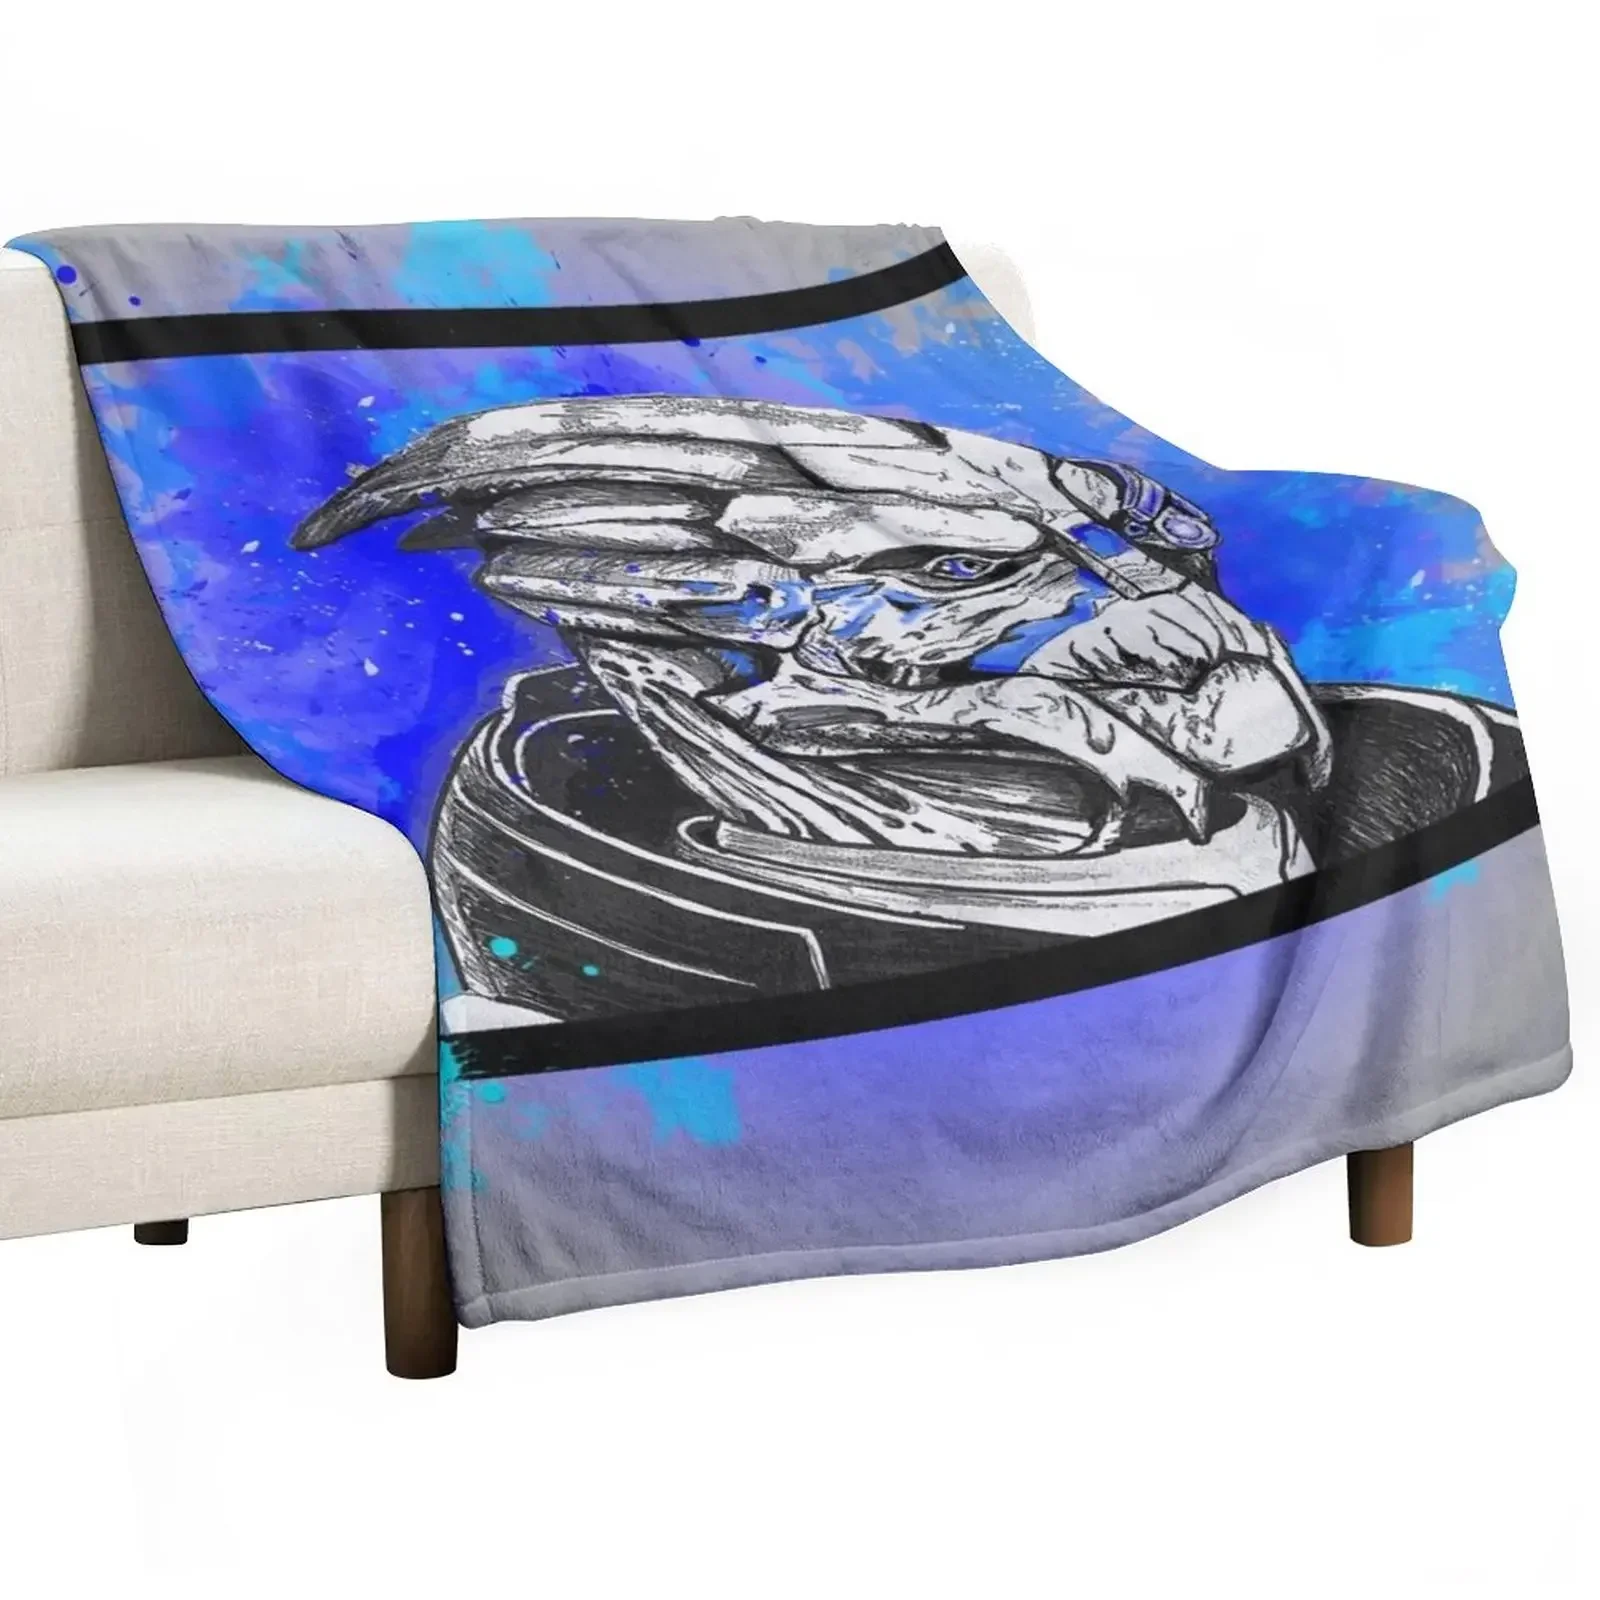 

Одеяло Garrus vakariиз: Mass Effect (синий), мягкое очень большое, милые пледы в клетку